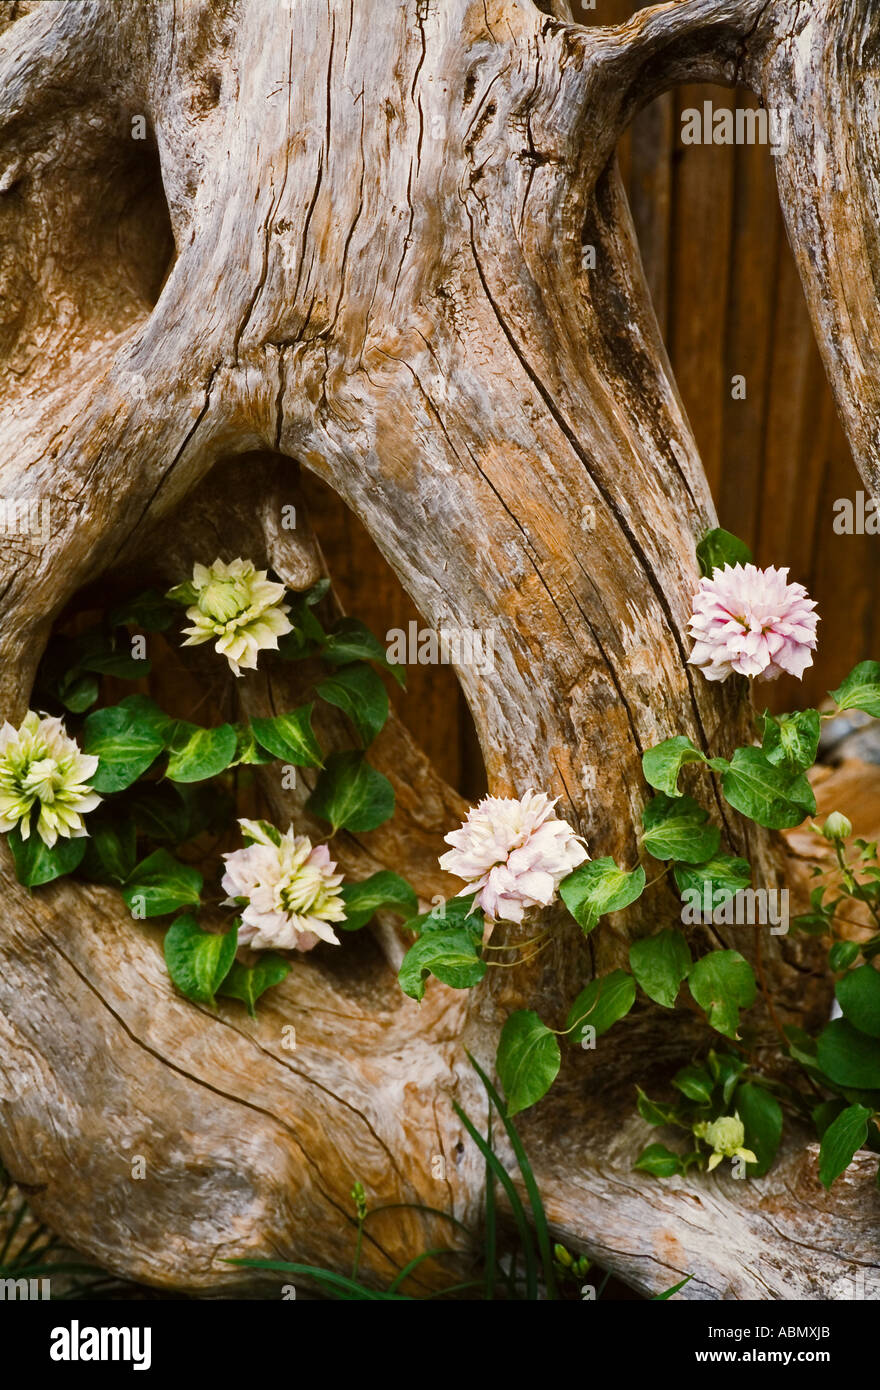 Clematis Fleurs disposées à l'intérieur d'une vieille souche d'arbre Banque D'Images